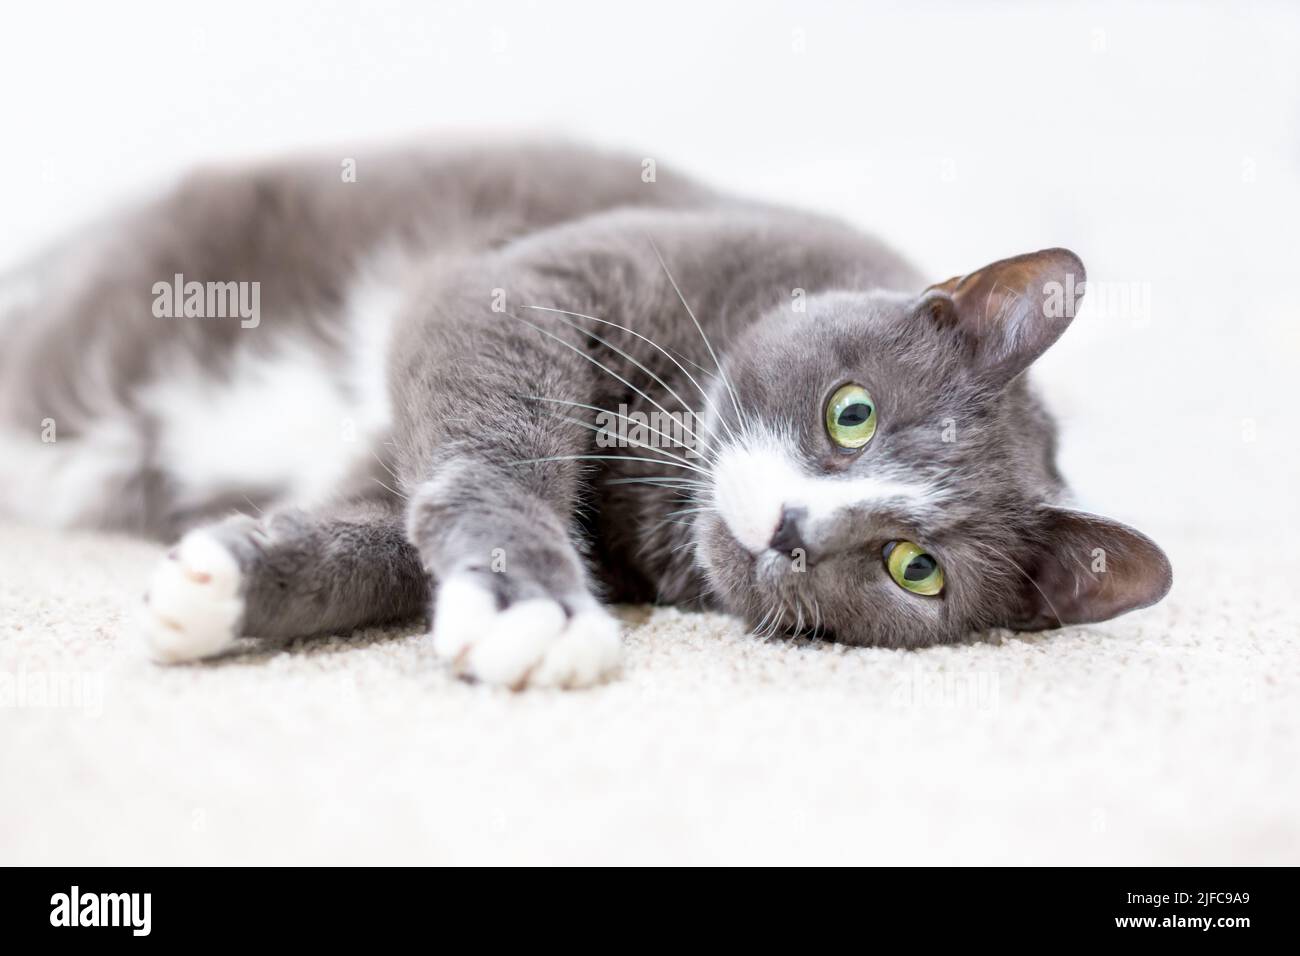 Un gato shorthair gris y blanco con ojos verdes tumbados en una posición relajada al revés Foto de stock